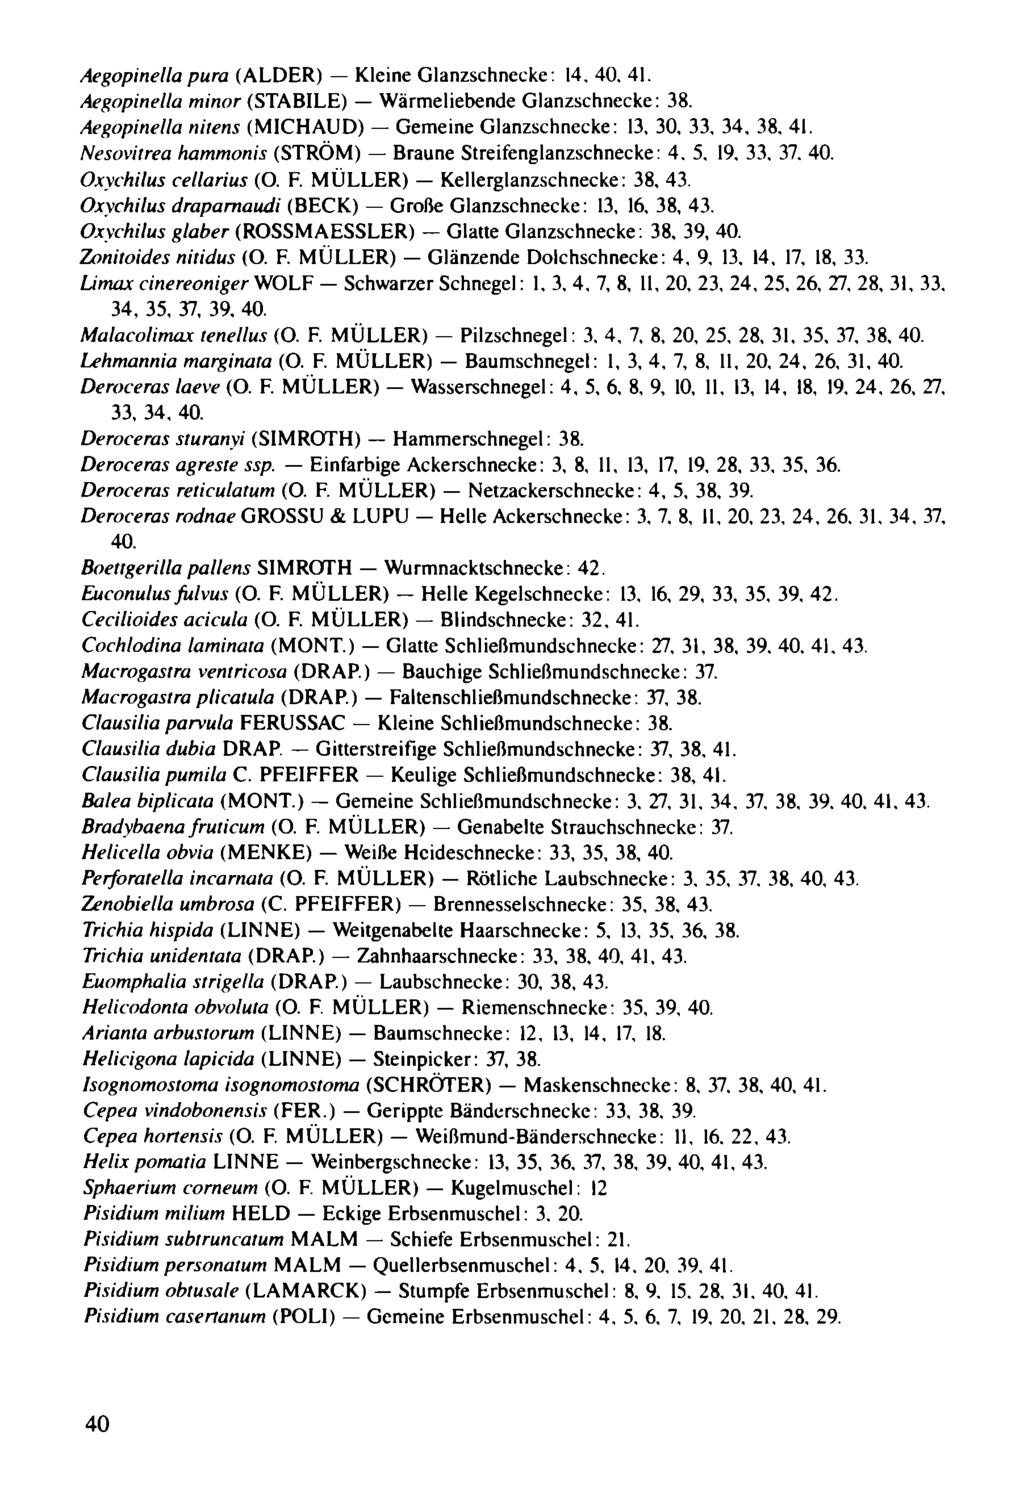 Aegopinella pura (ALDER) - Kleine Glanzschnecke: 14.40.41. Aegopinella minor (STABILE) - Wärmeliebende Glanzschnecke: 38. Aegopinella ni/ens (MICHAUD) - Gemeine Glanzschnecke : 13, 30, 33. 34, 38, 41.